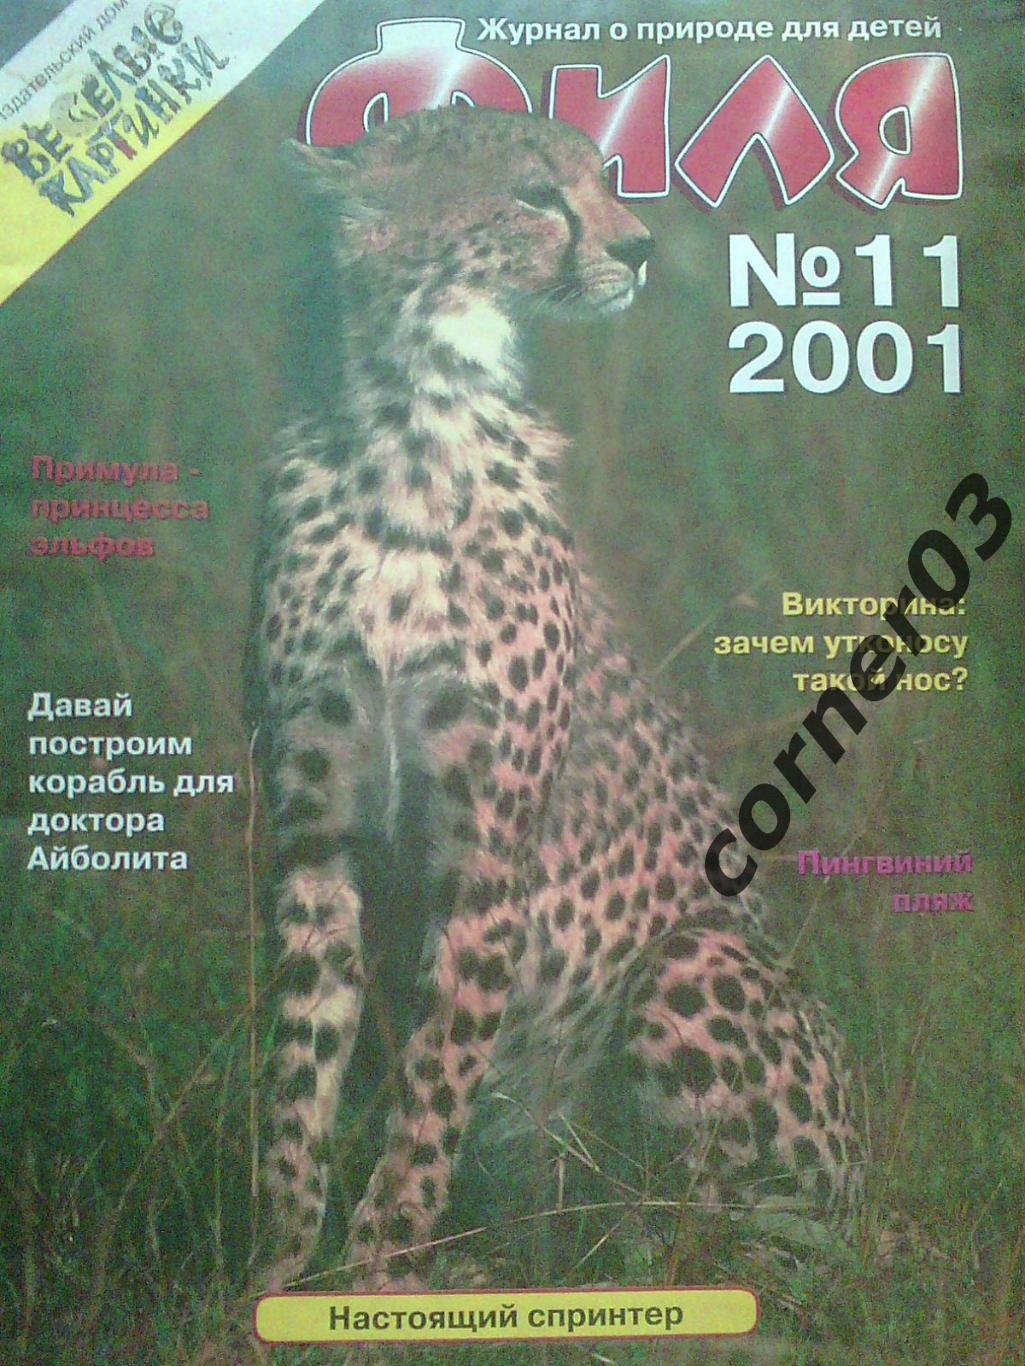 Журнал Филя №11 2001 год